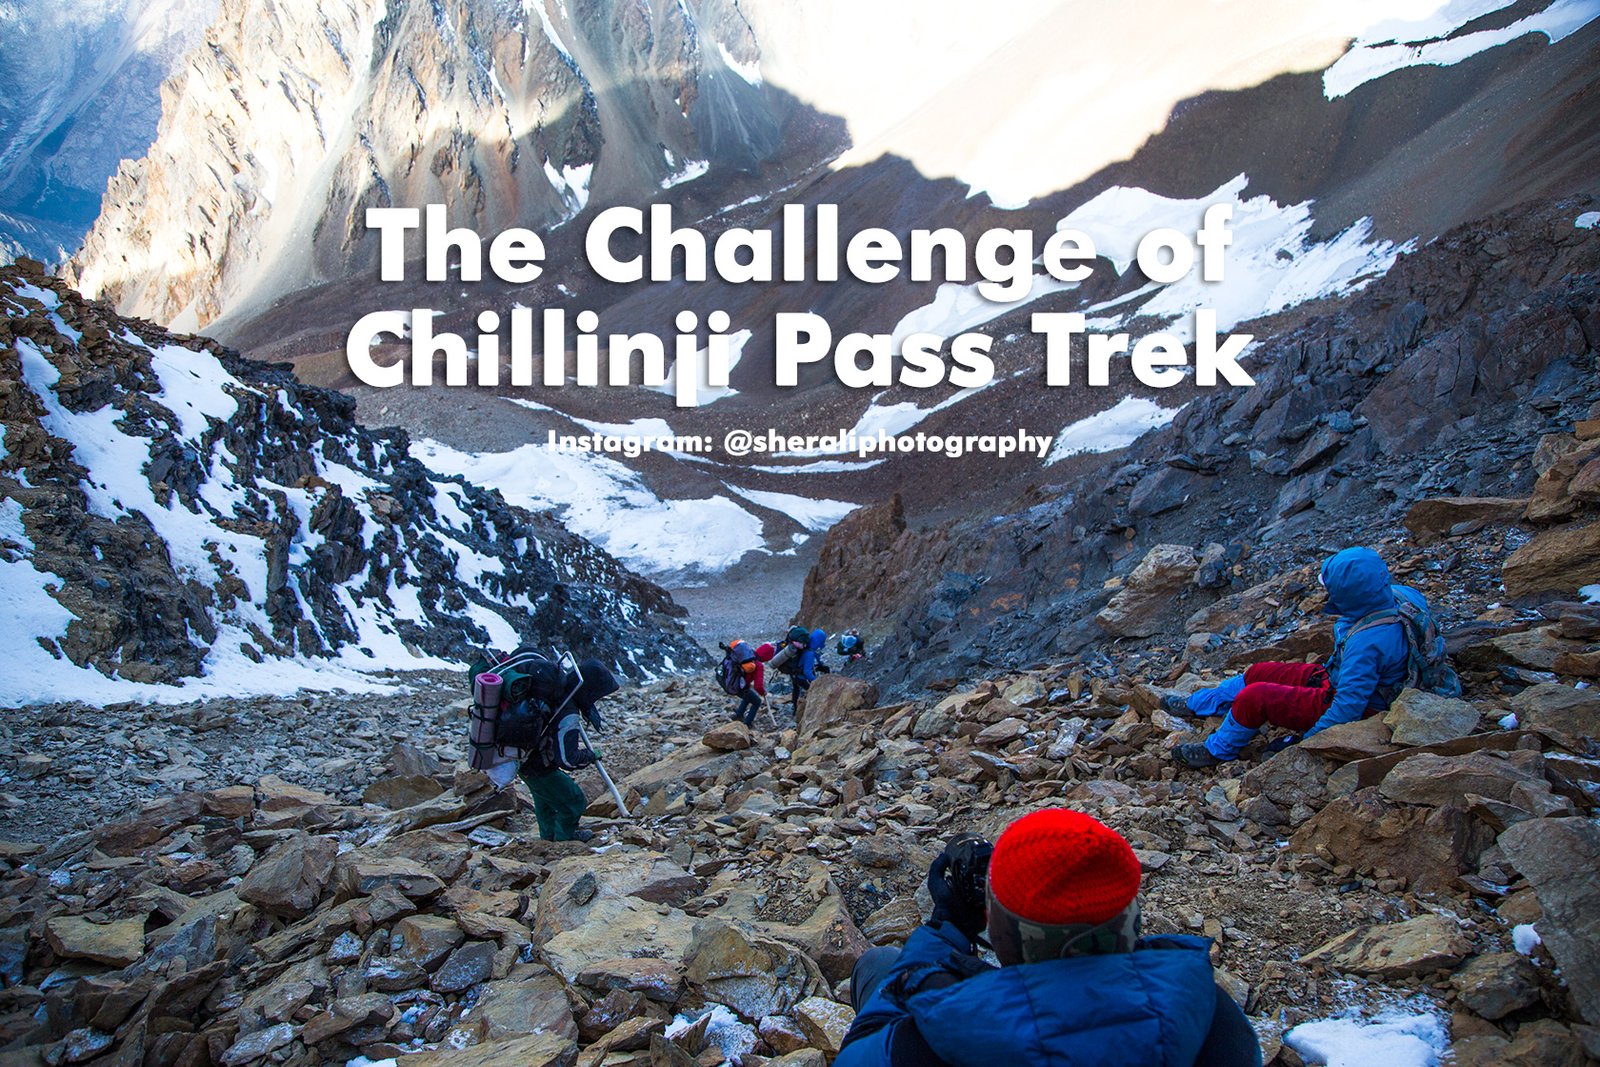 The Challenge of Chillinji Pass